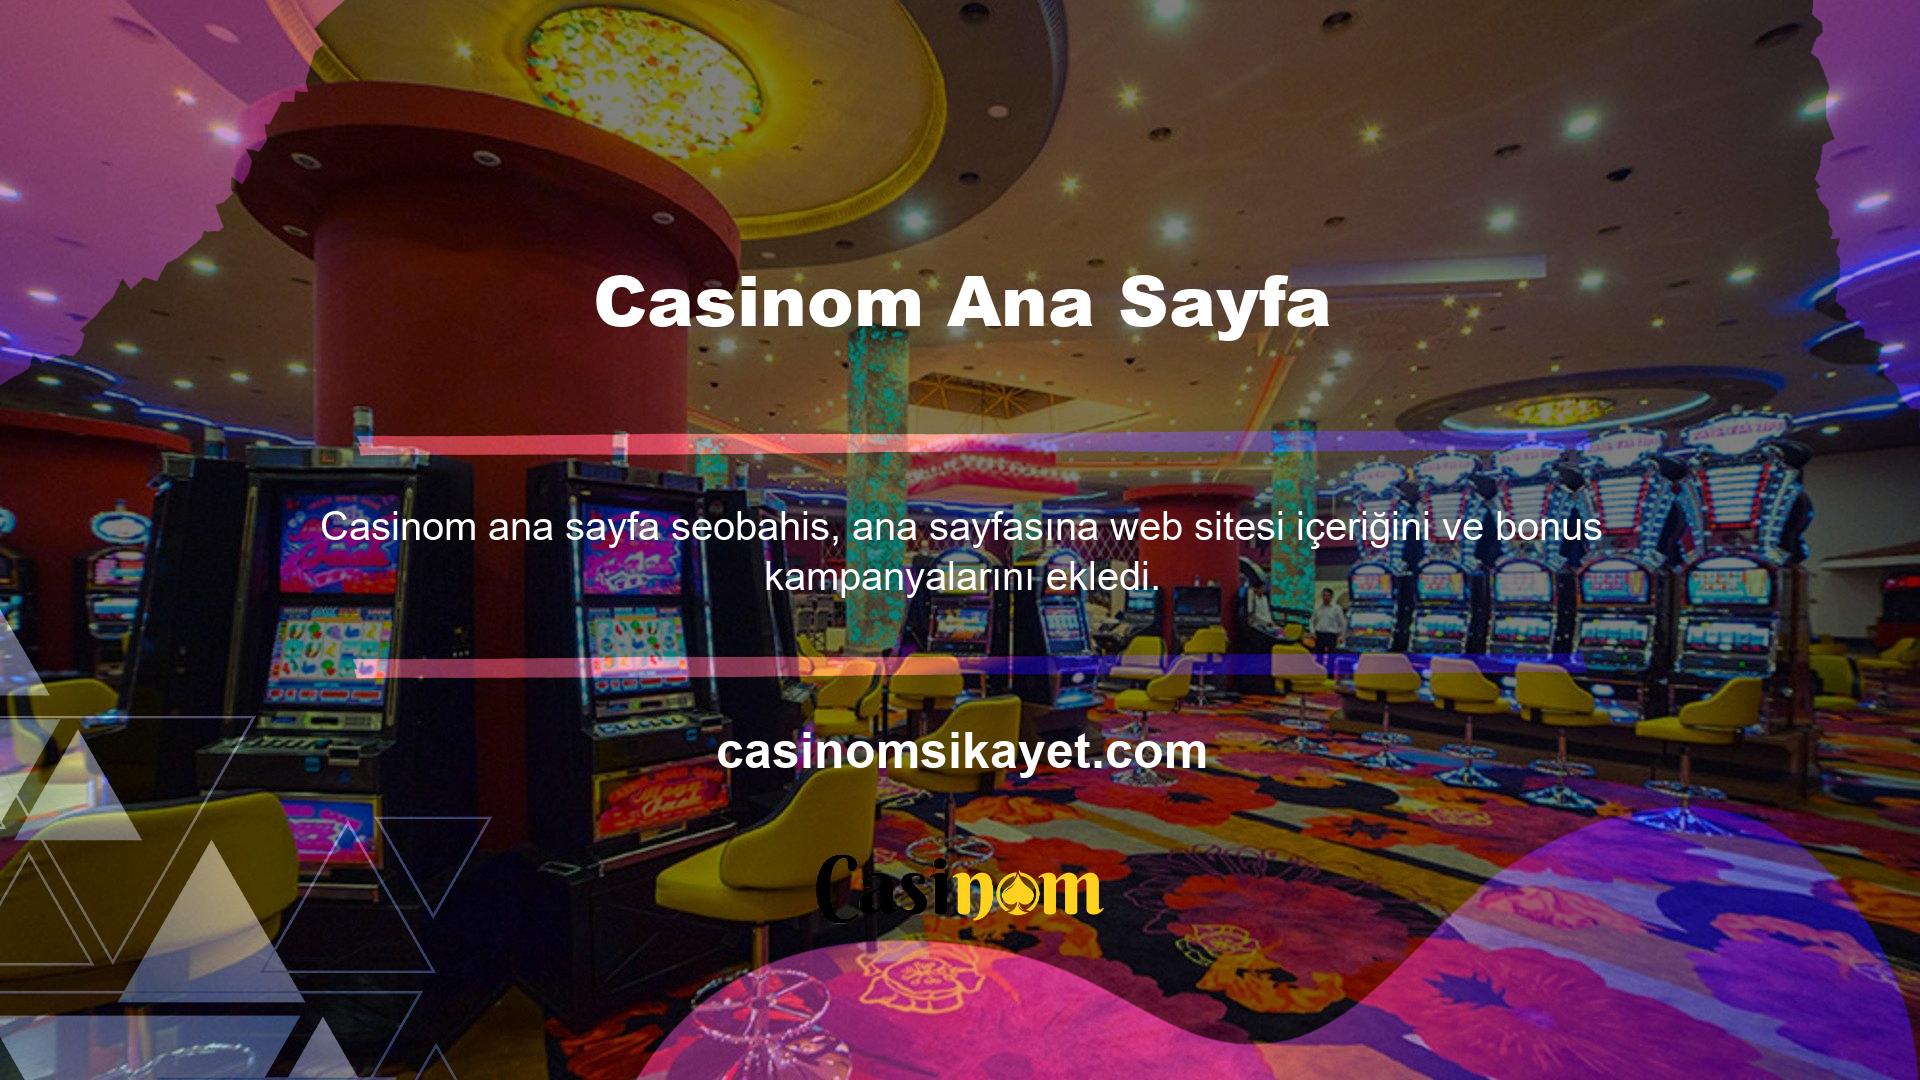 Bu web sitesi Oyunlar ve Casino kategorisi altında faaliyet göstermekte olup aynı zamanda kullanıcılarına özel hediye promosyonları da düzenlemektedir